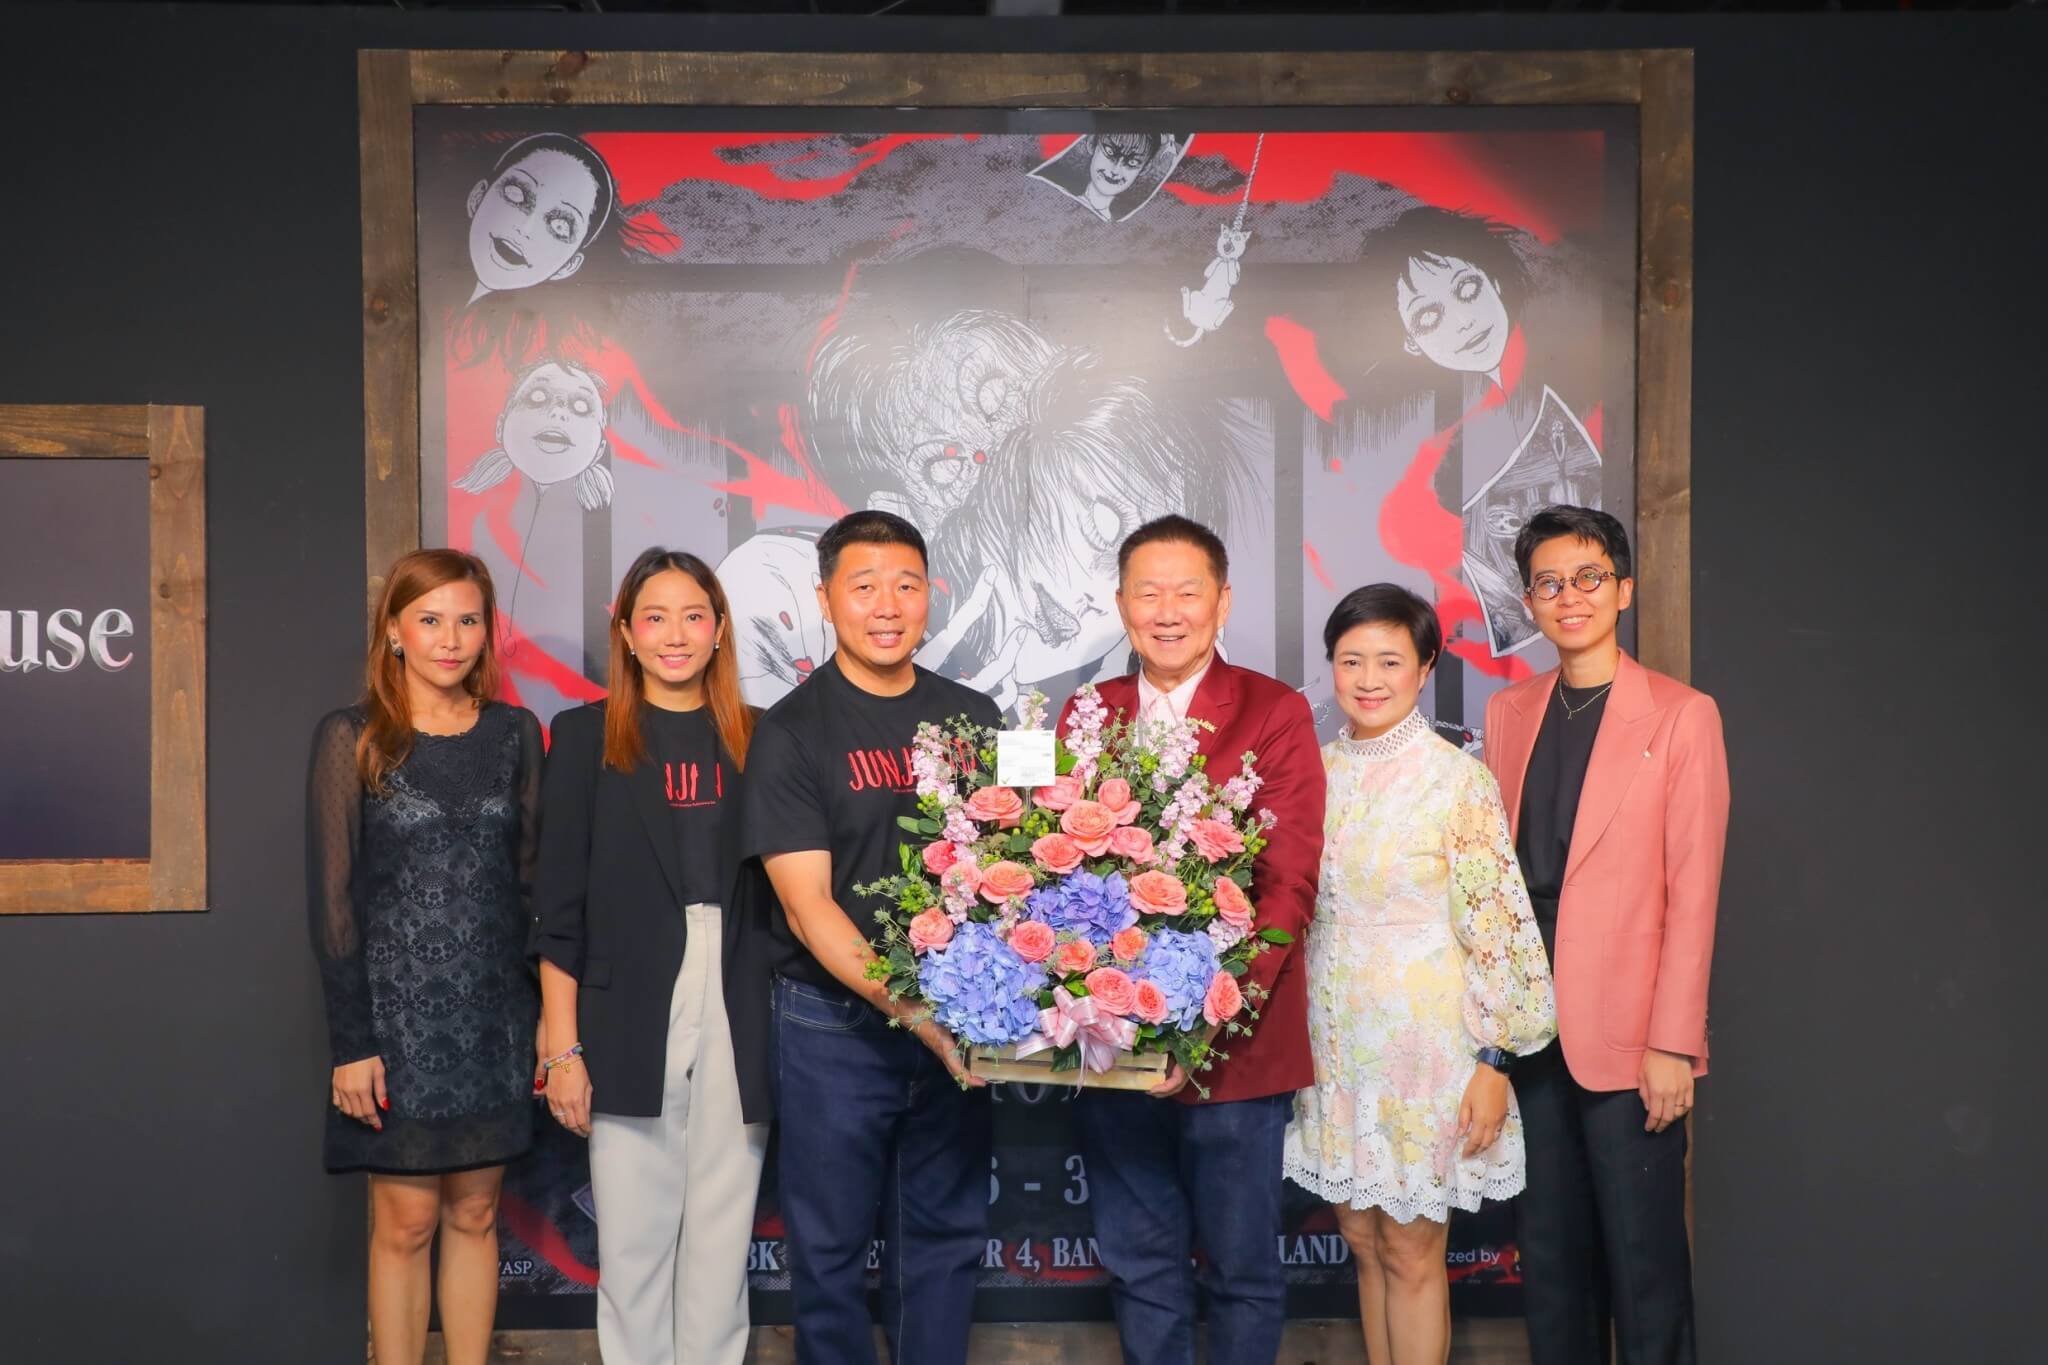 คณะผู้บริหารเอ็ม บี เค เซ็นเตอร์ ร่วมแสดงความยินดีเปิดตัวนิทรรศการคลังสยองจุนจิ อิโต้ Junji Ito Horror House in Thailand 2023